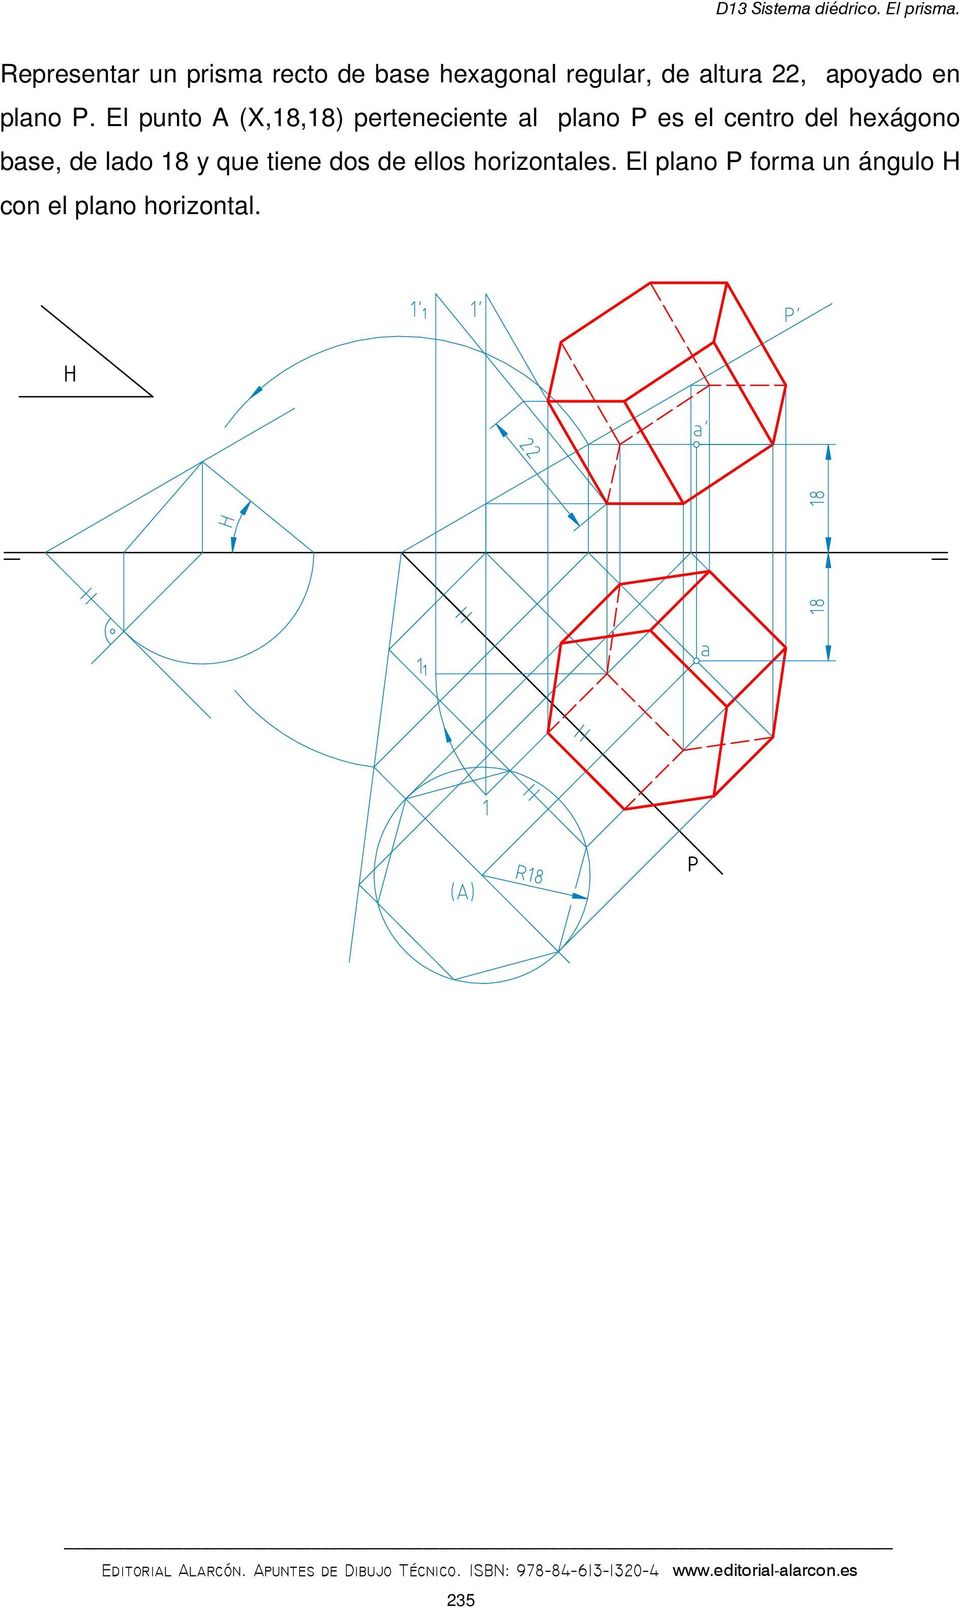 El punto A (X,18,18) perteneciente al plano P es el centro del